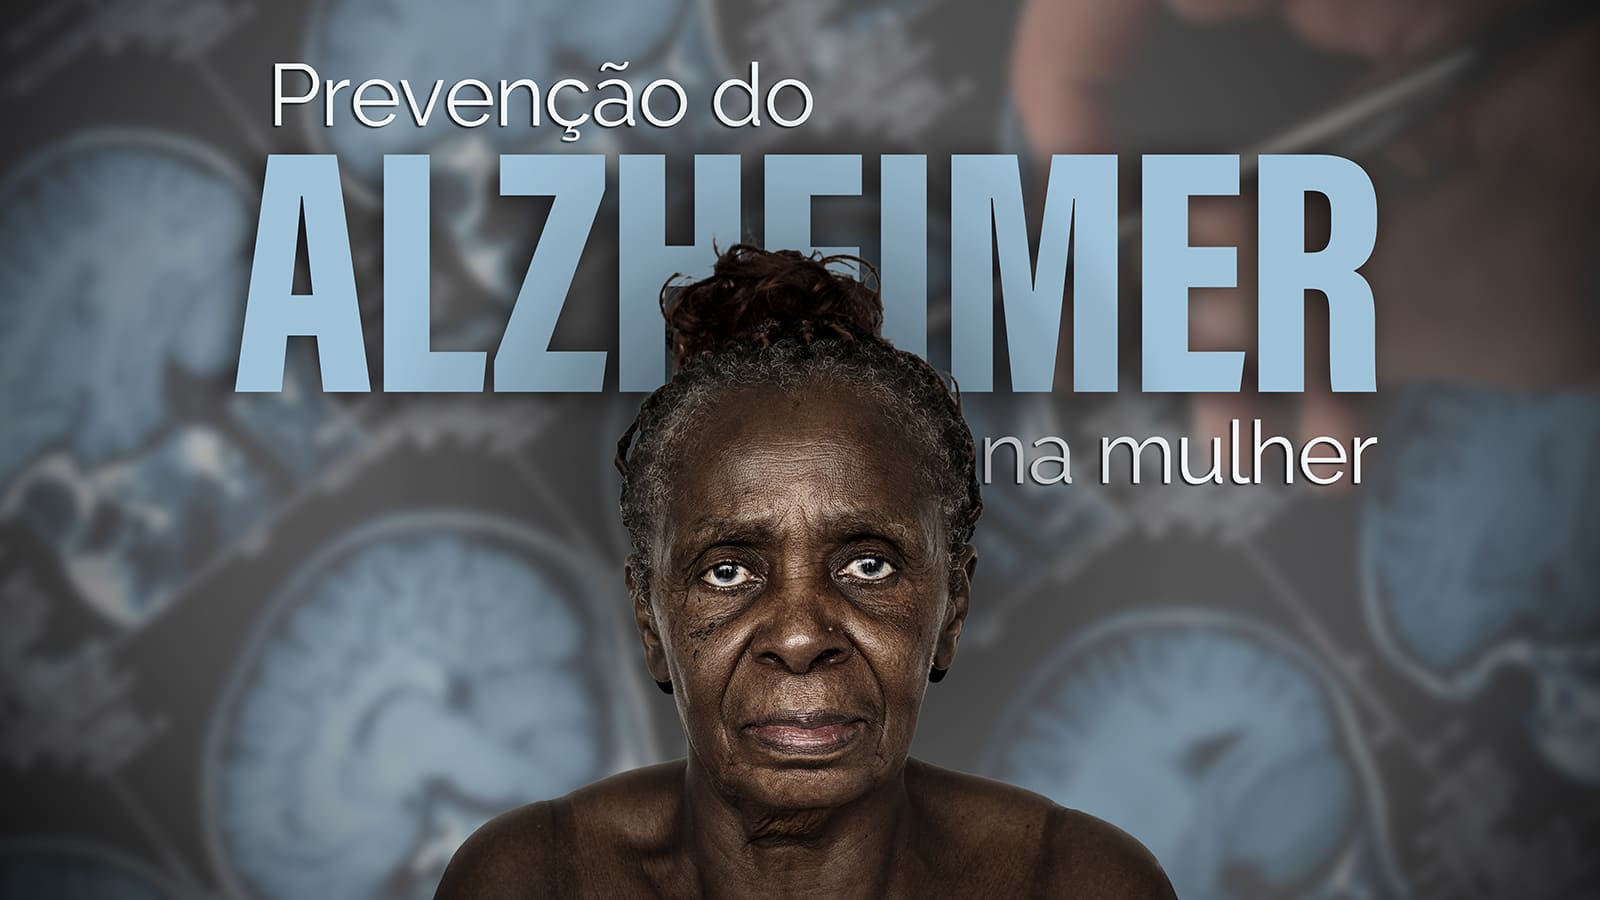 Retrato de mulher negra, idosa, com cabelos presos. Sobreposição do texto: Prevenção do Alzheimer na mulher. Como plano de fundo, imagens de ressonância magnética de um cérebro.